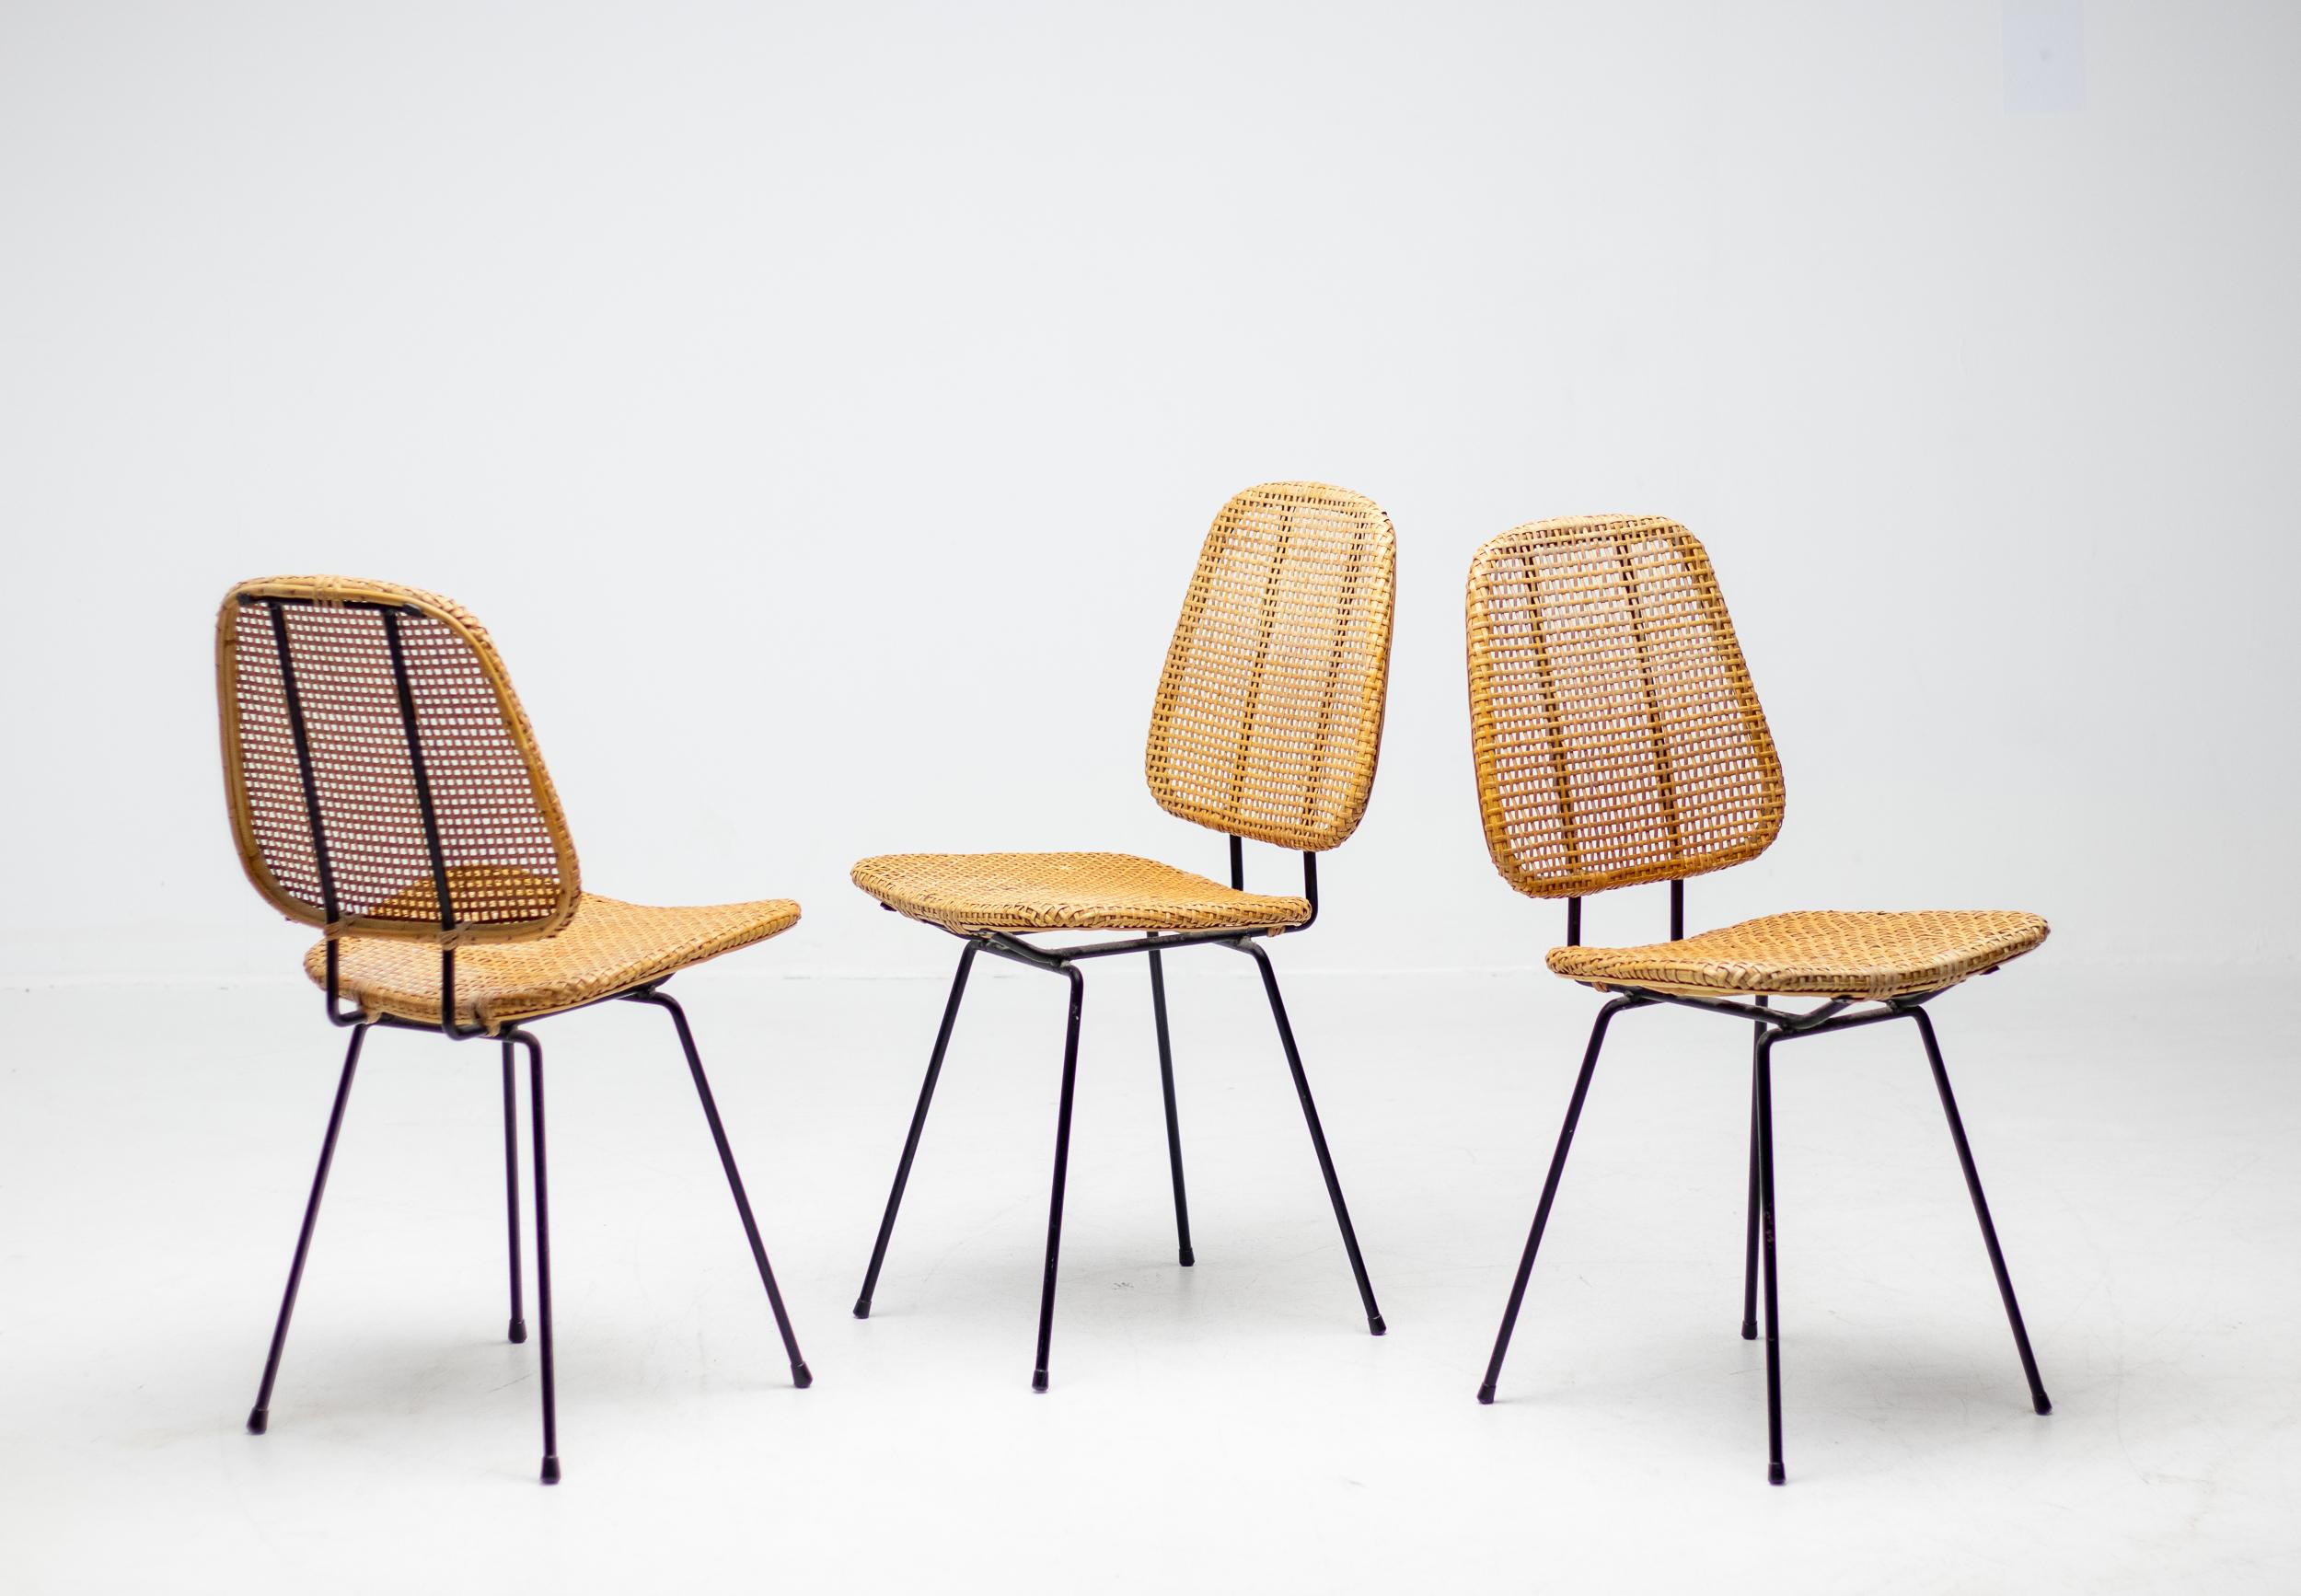 Anmutiger italienischer Beistellstuhl aus den 1950er Jahren aus massivem schwarz emailliertem Stahl und Rattan.
Es sind drei Stühle erhältlich, die einzeln berechnet werden.